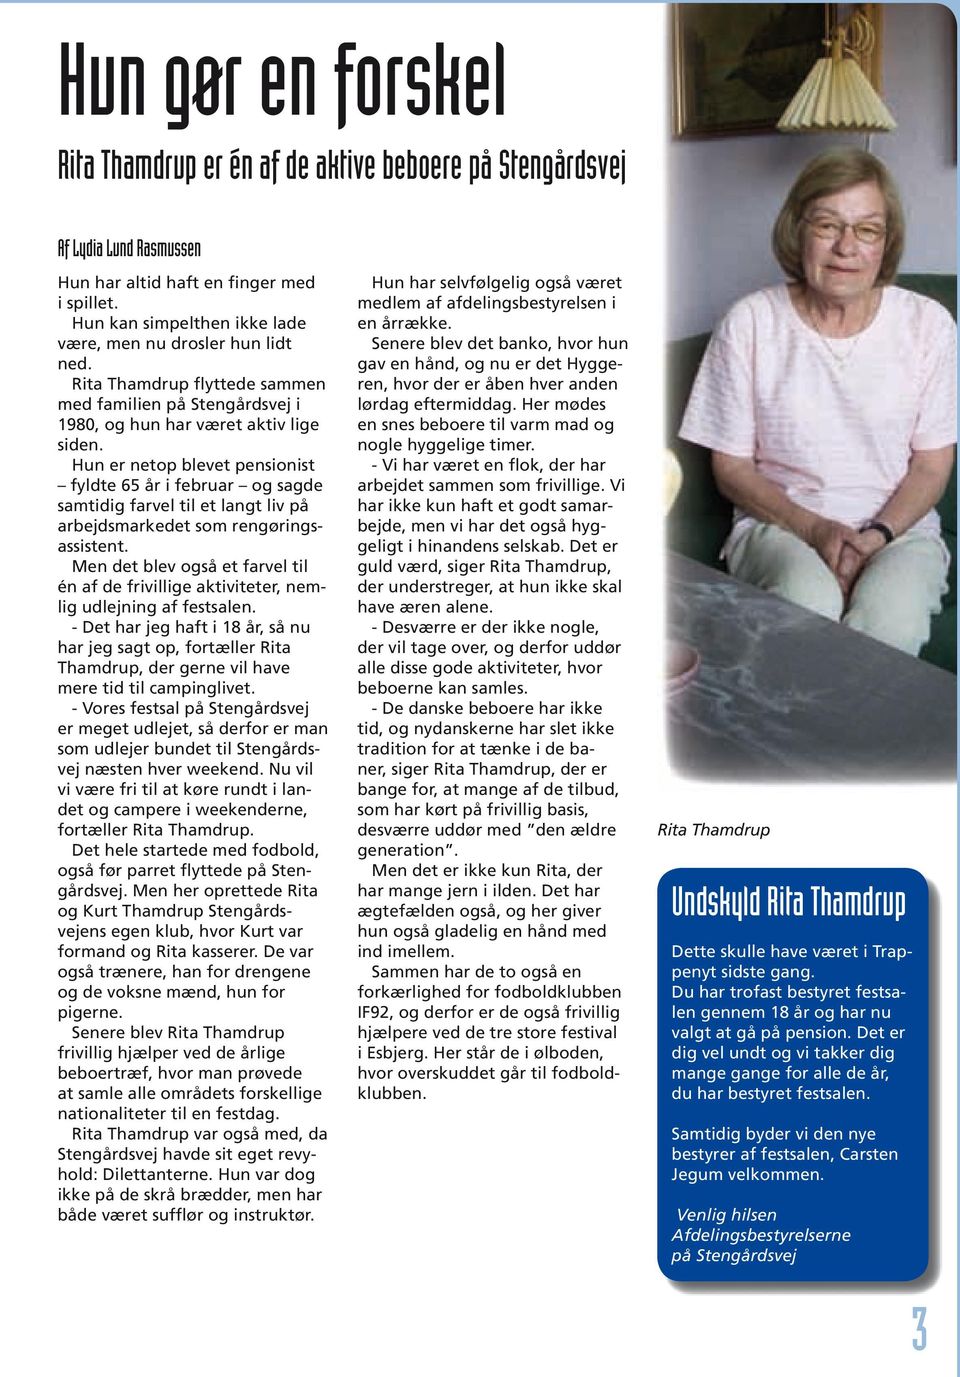 Hun er netop blevet pensionist fyldte 65 år i februar og sagde samtidig farvel til et langt liv på arbejdsmarkedet som rengøringsassistent.